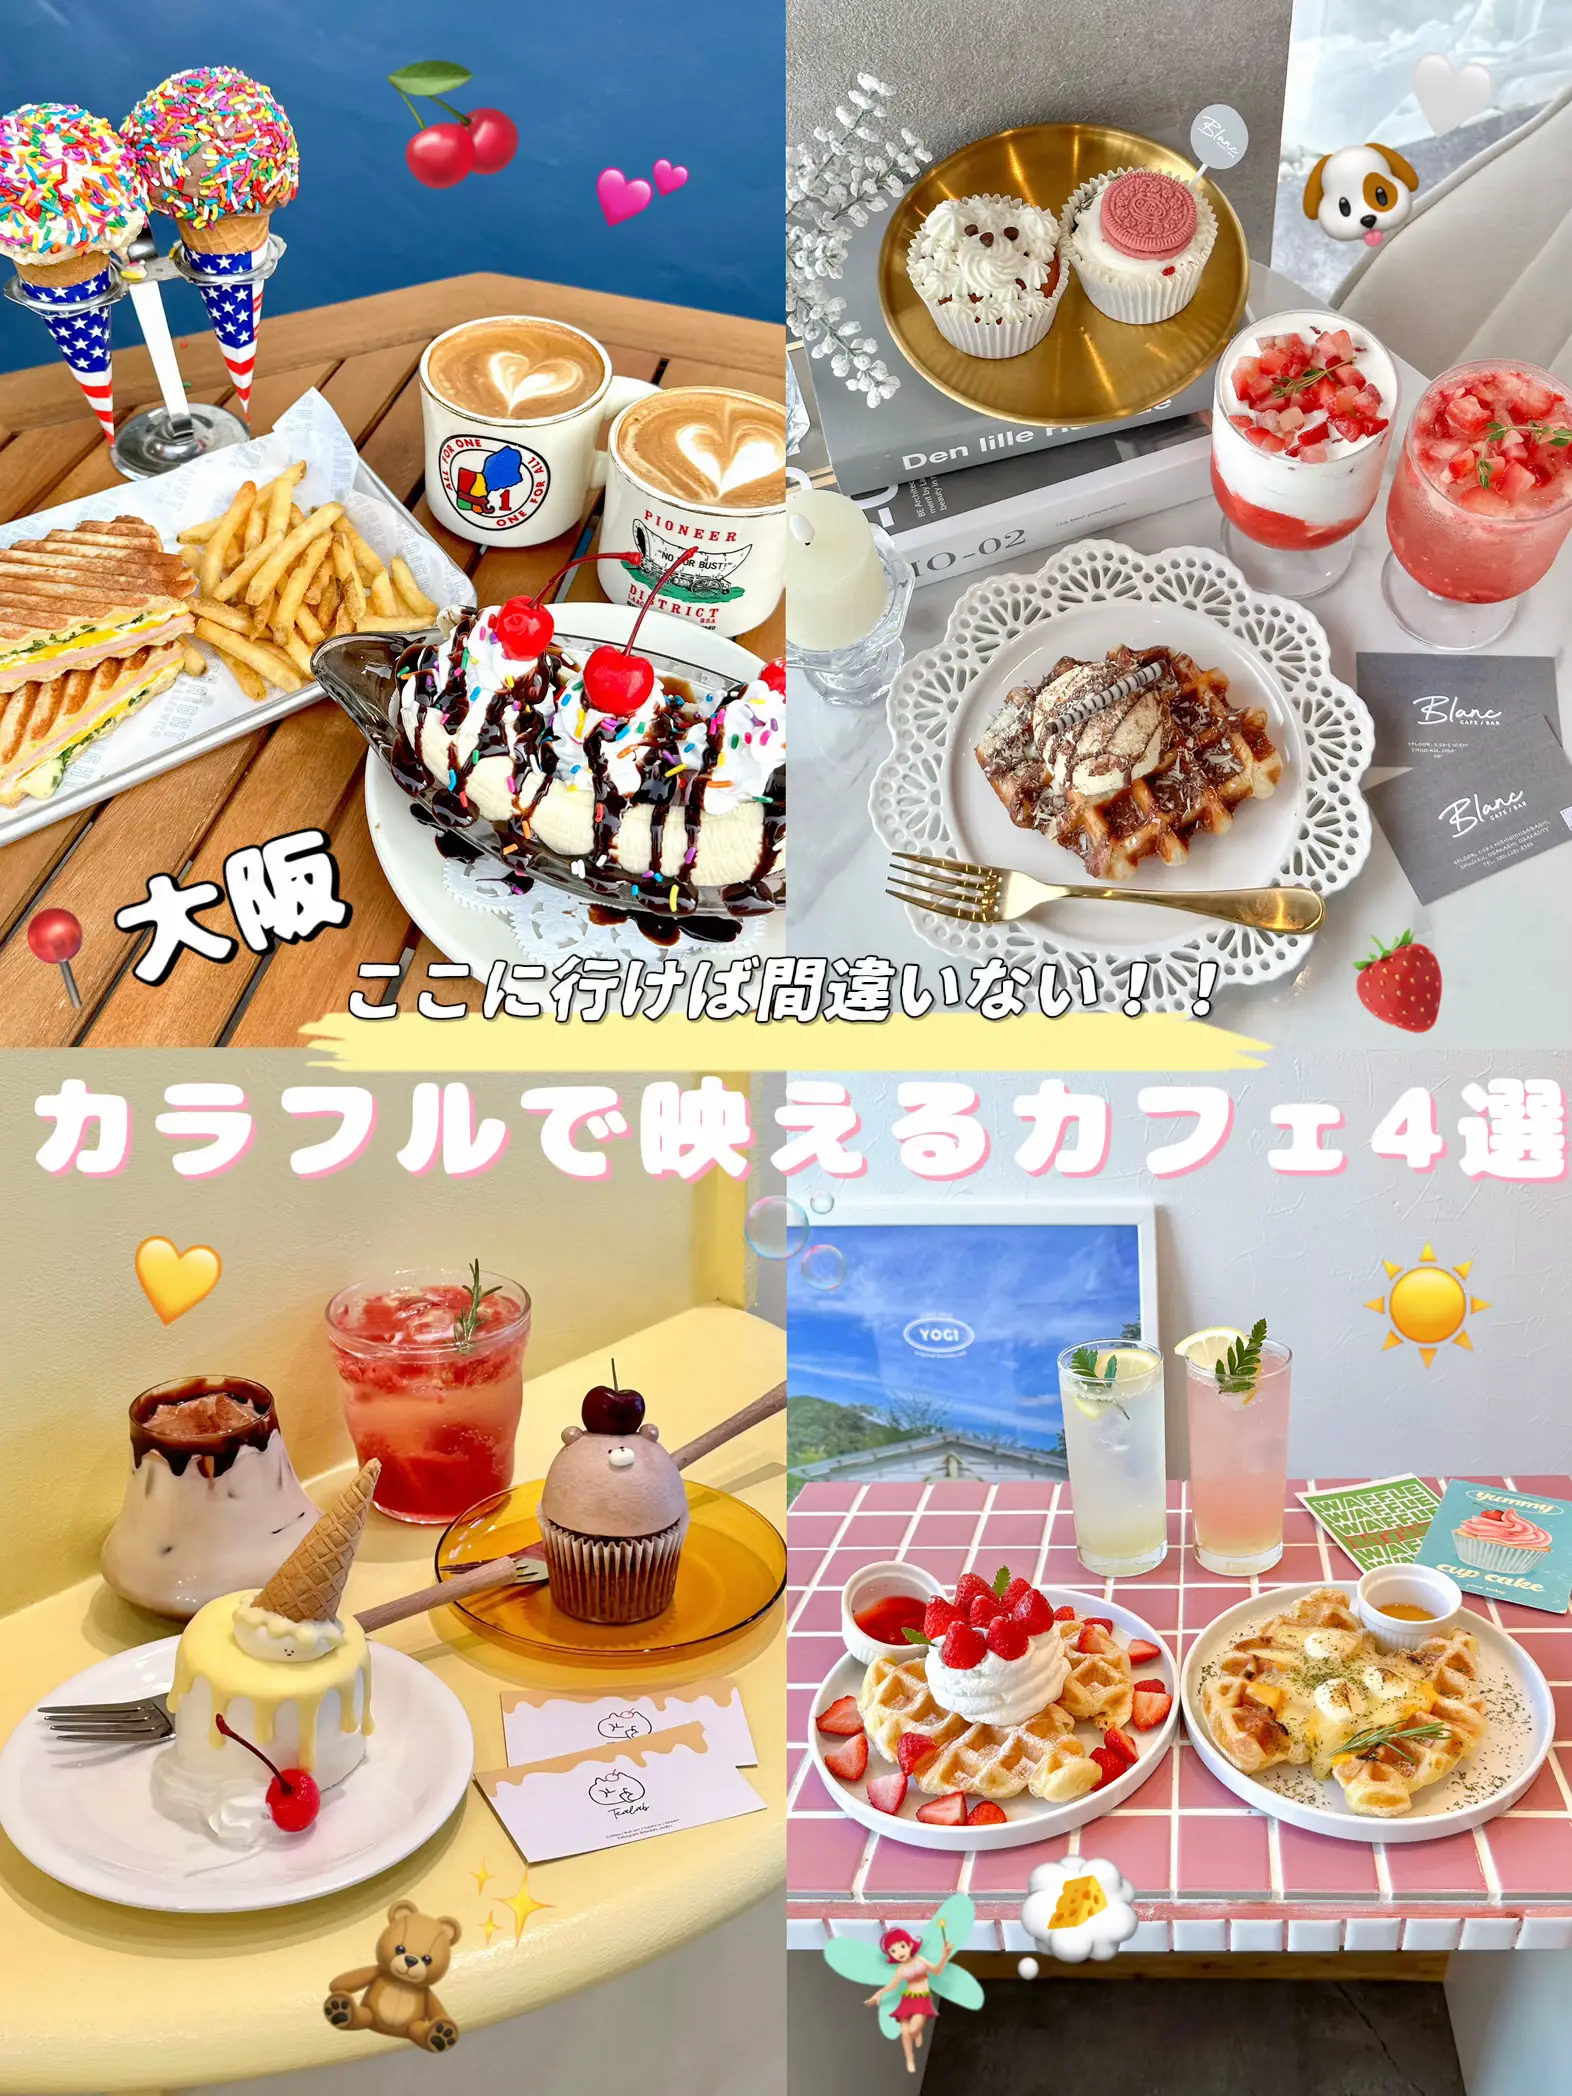 映えカフェ大阪 - Lemon8検索